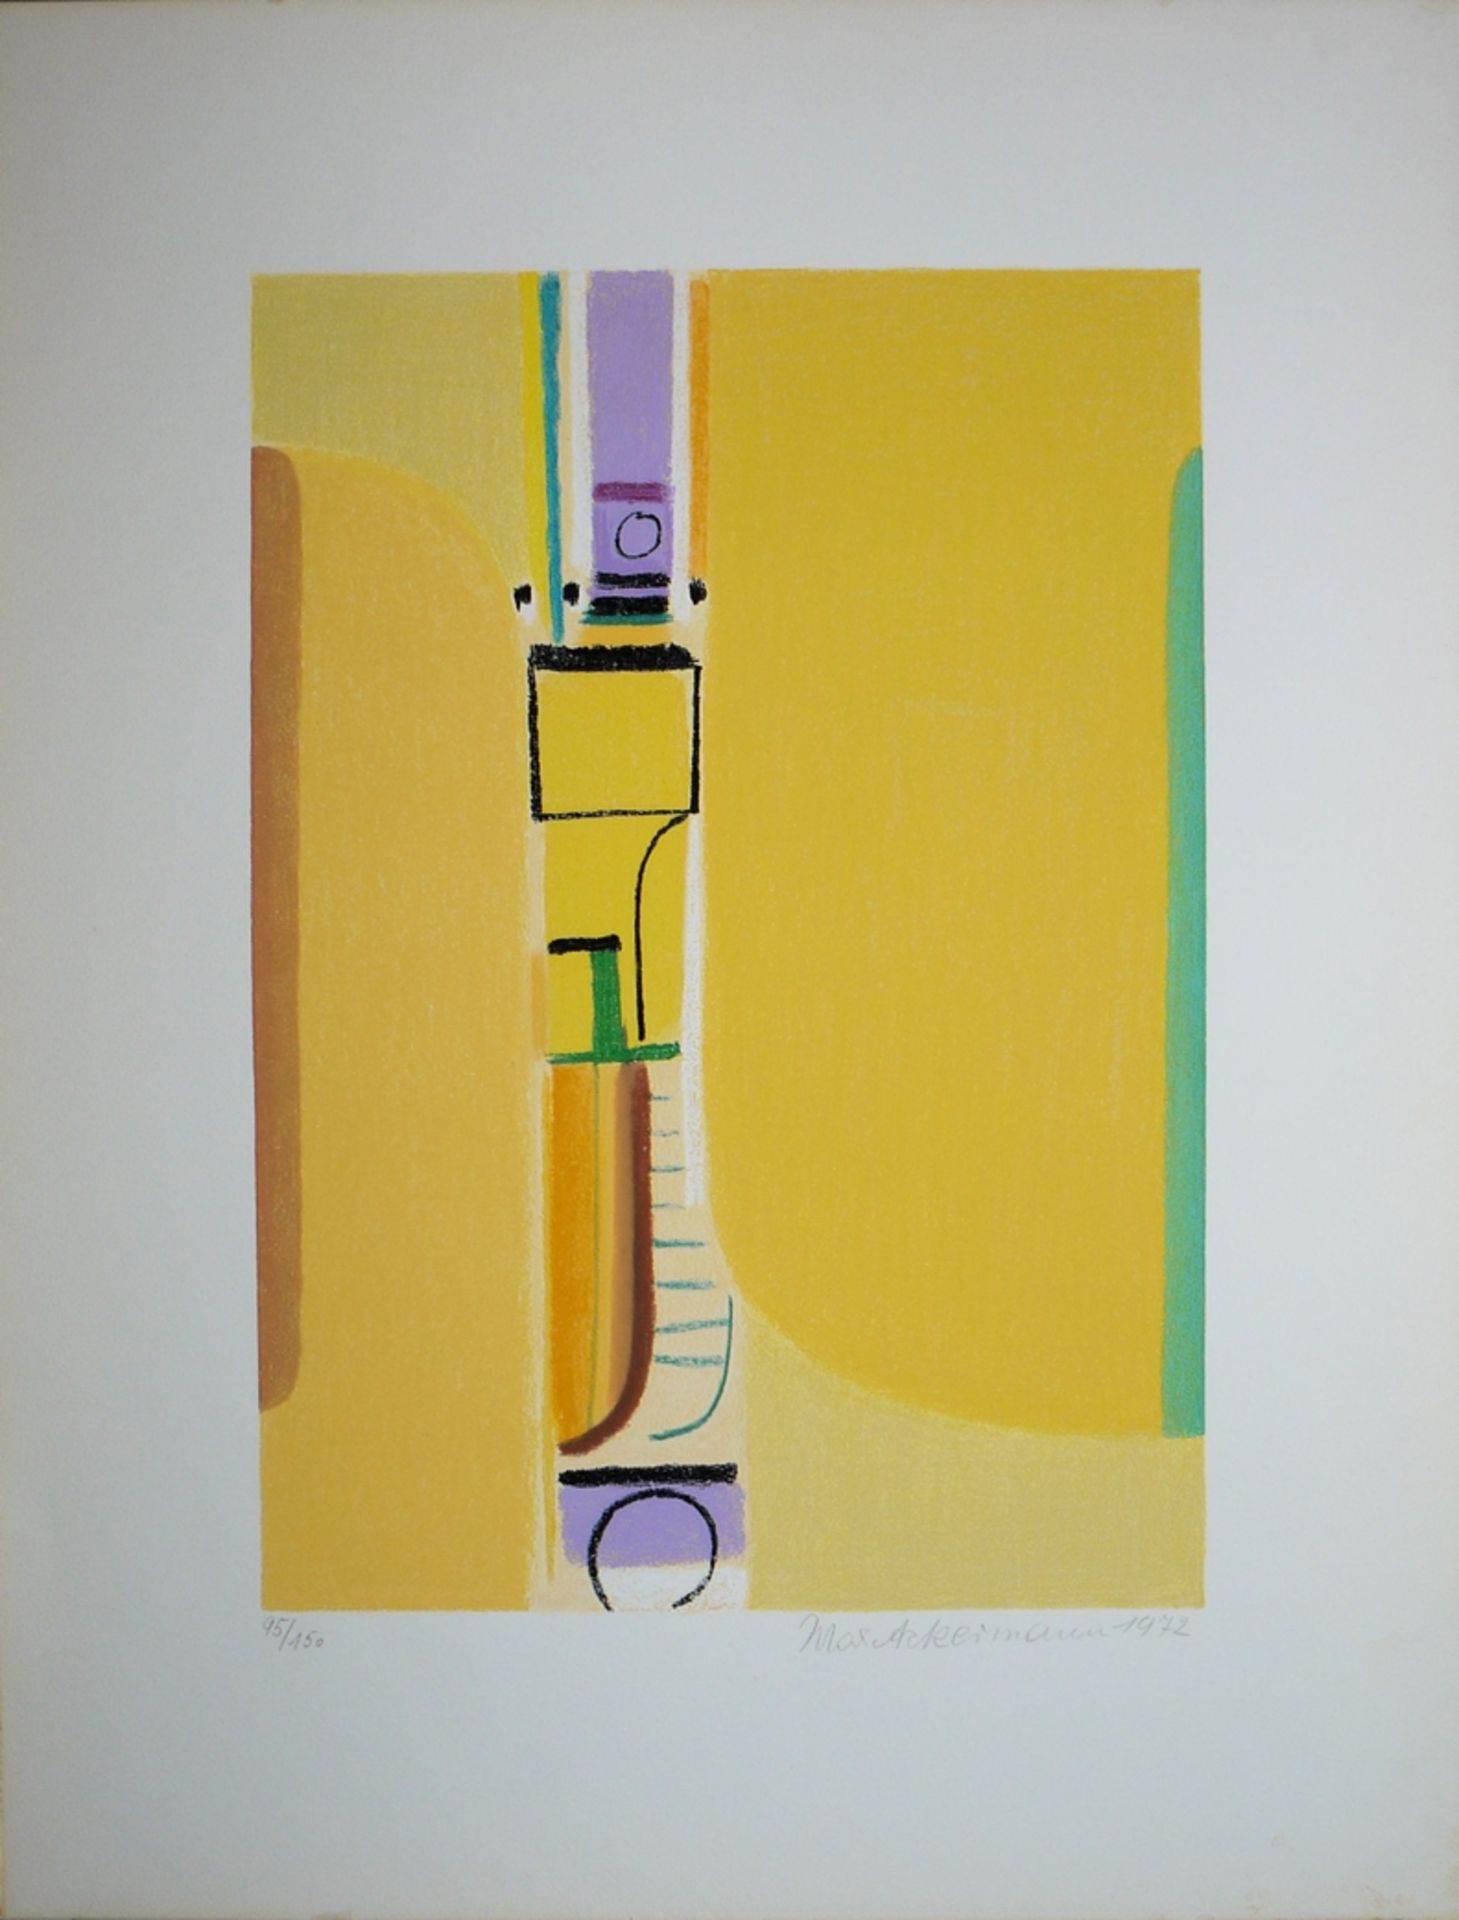 Max Ackermann, "Strahlende Pforte" und "Mauerbild", zwei signierte Farbserigraphien von 1972 und 19 - Bild 3 aus 4